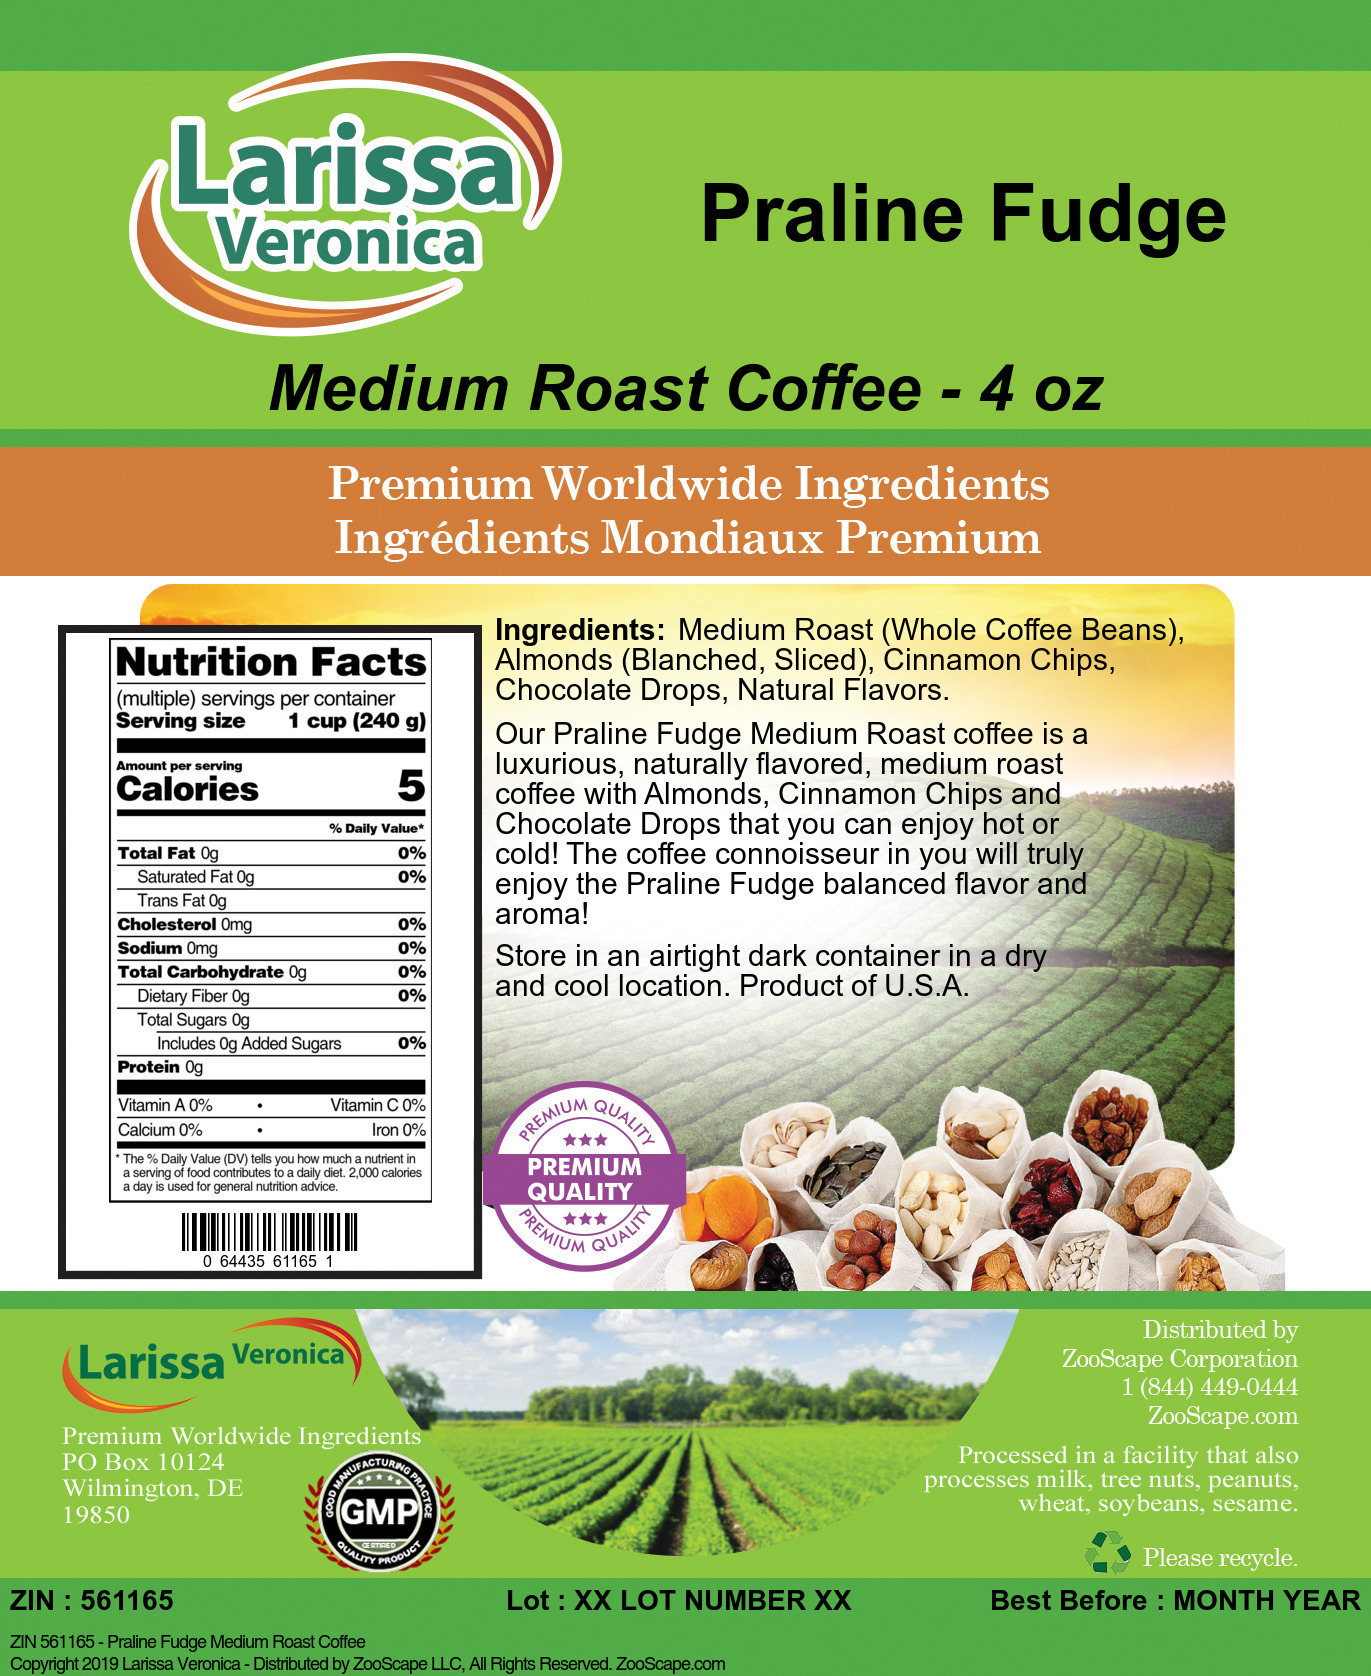 Praline Fudge Medium Roast Coffee - Label